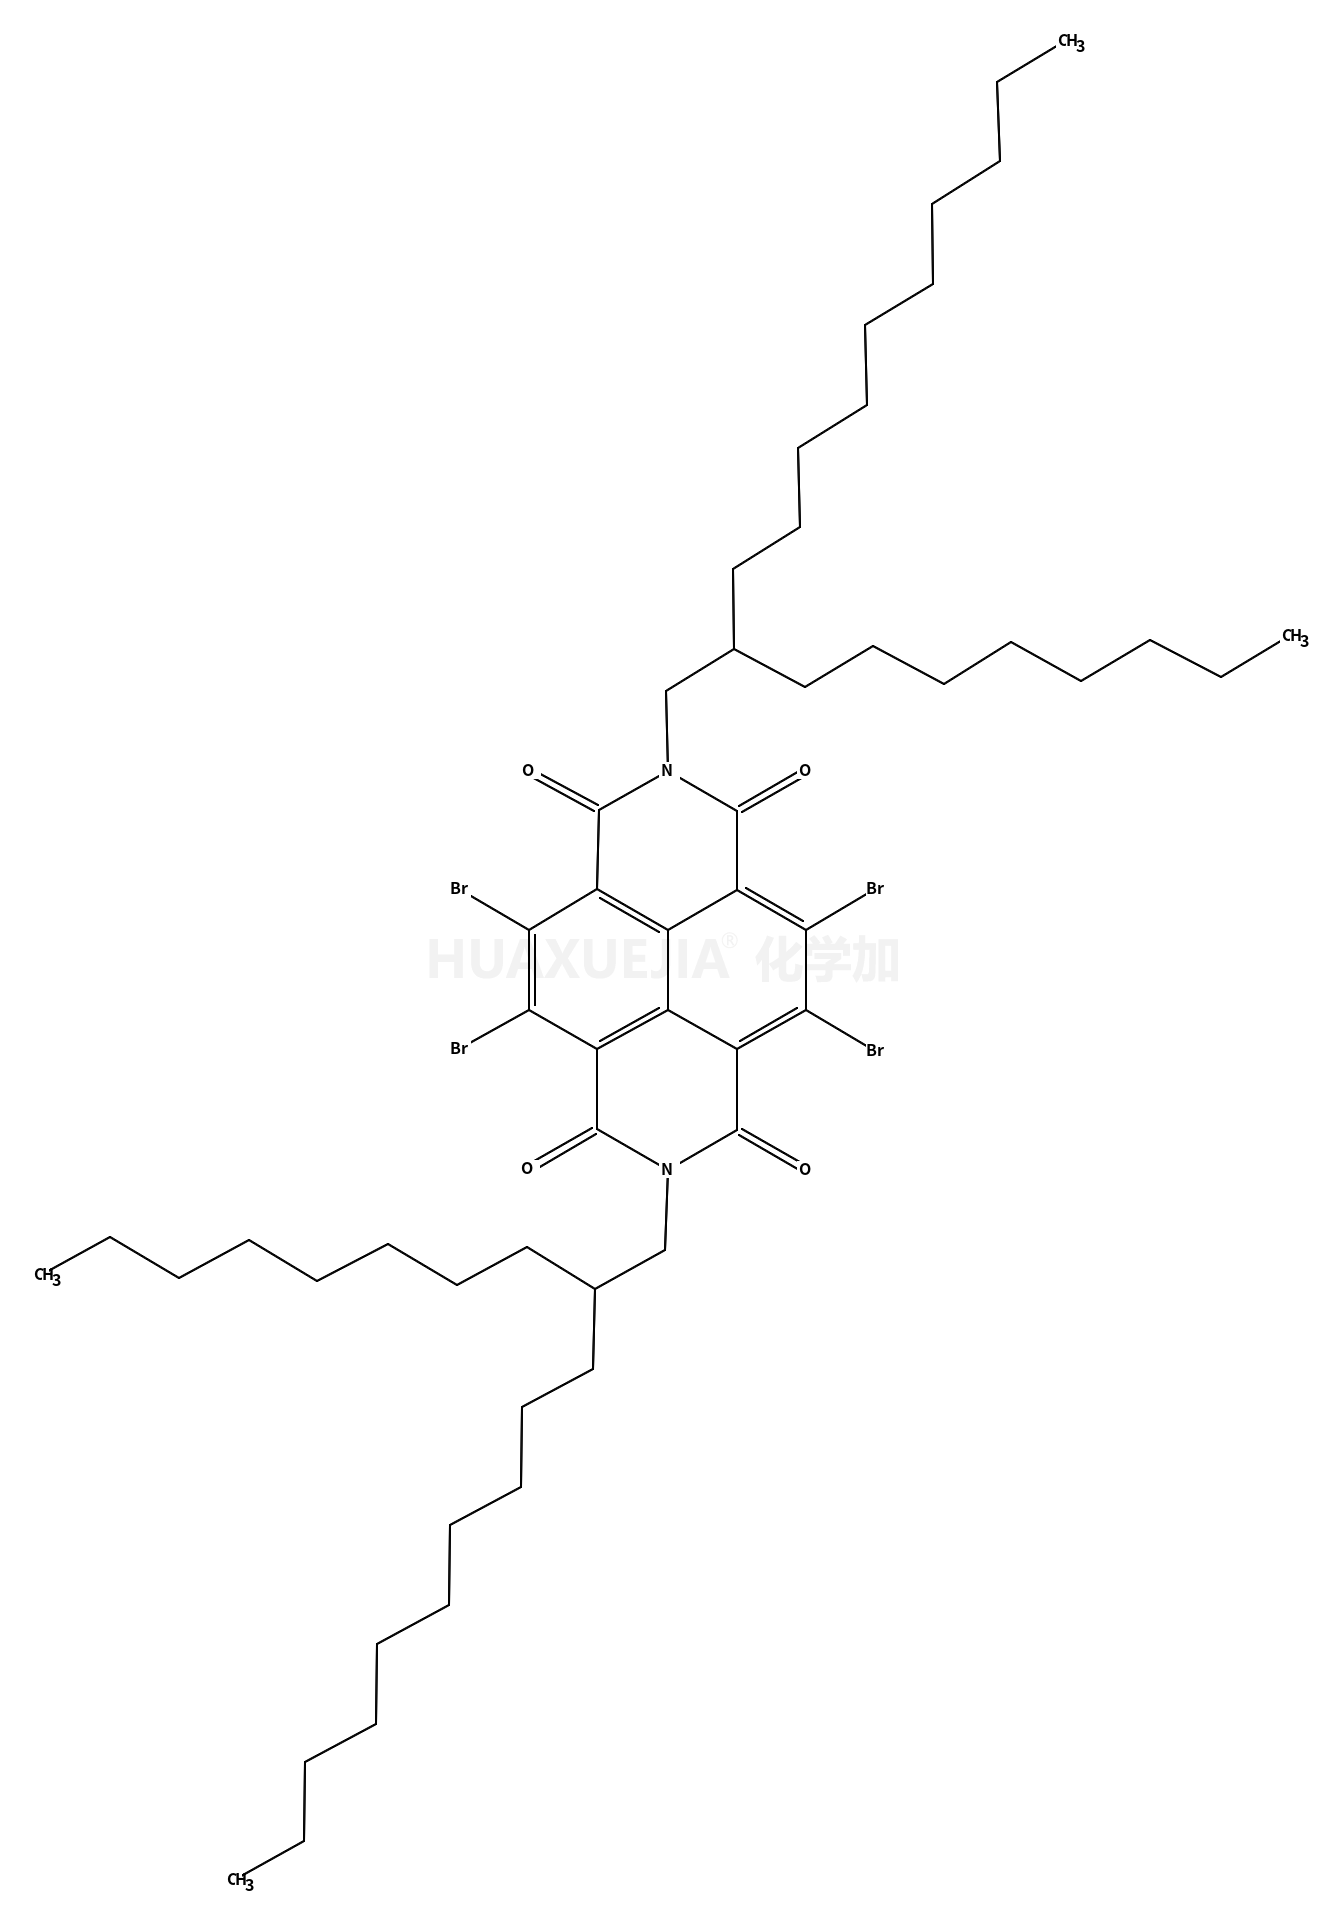 4,5,9,10-tetrabromo-2,7-bis(2-octyldodecyl)benzo[lmn][3,8]phenanthroline-1,3,6,8(2H,7H)-tetraone